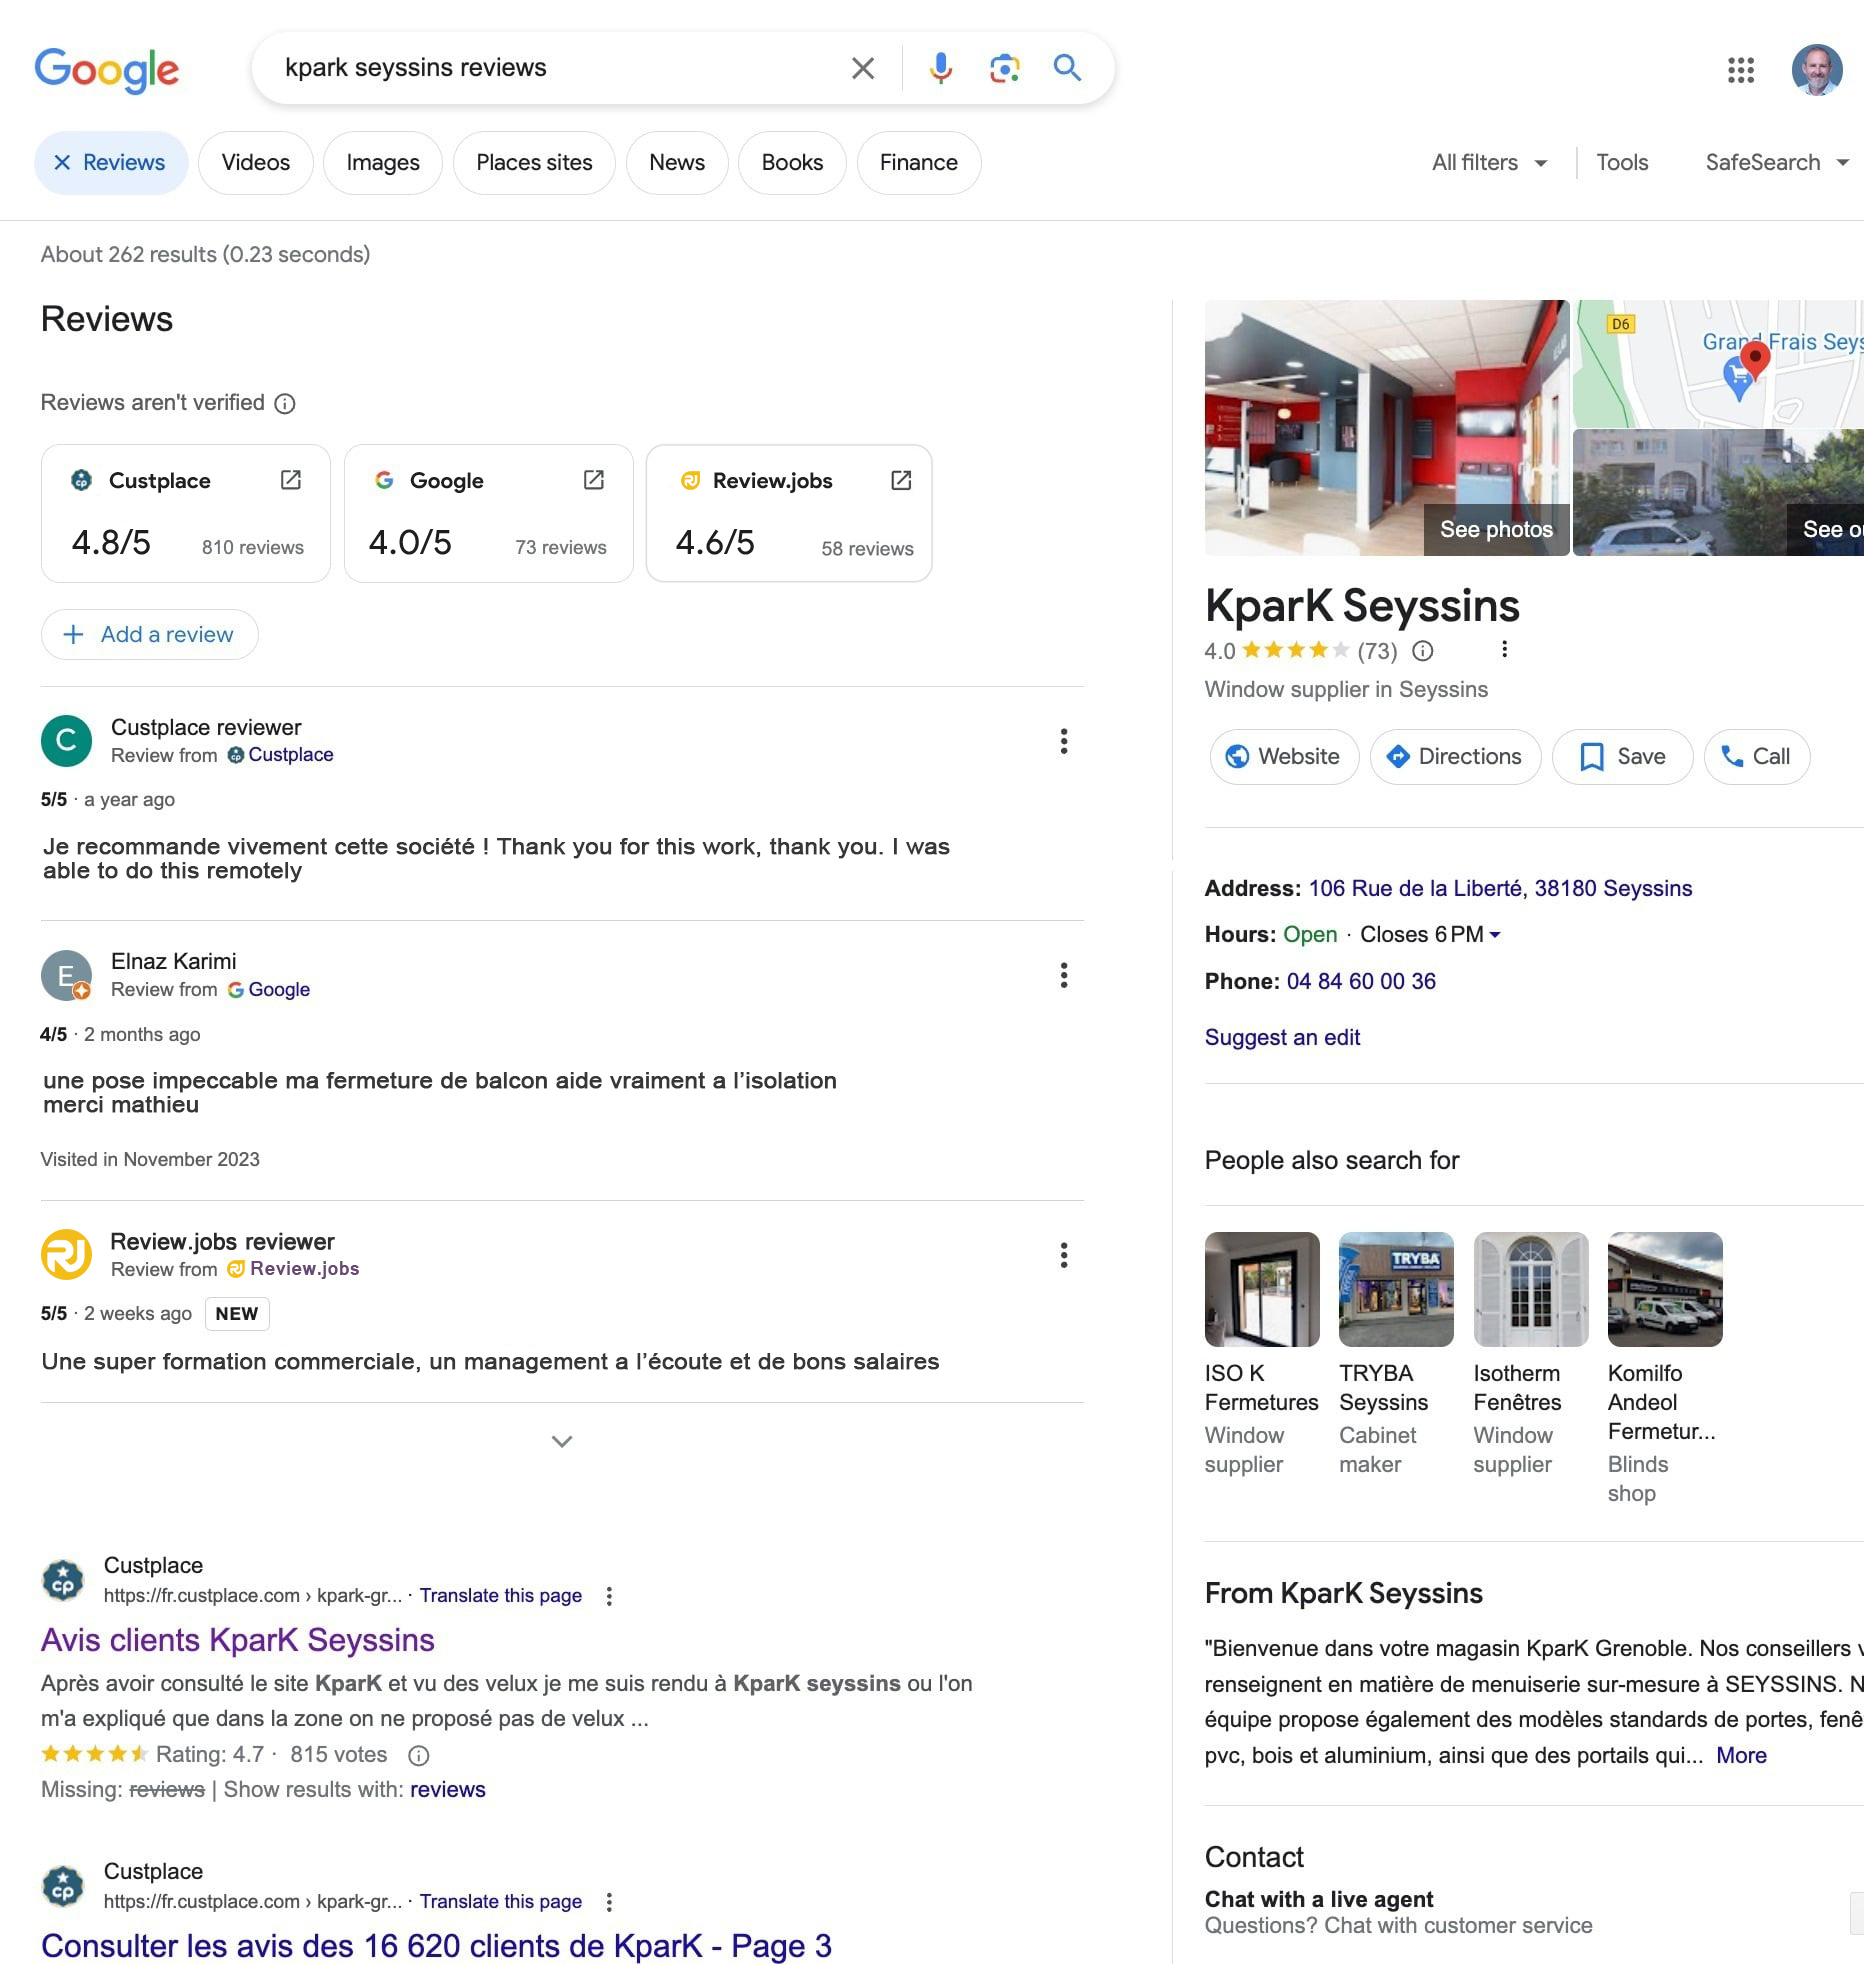 Affichage des avis Custplace et Review.jobs ajoutés à ceux de Google lors d'une recherche des avis Kpark Seyssins, et ce suite au changement du Google Business Profile.